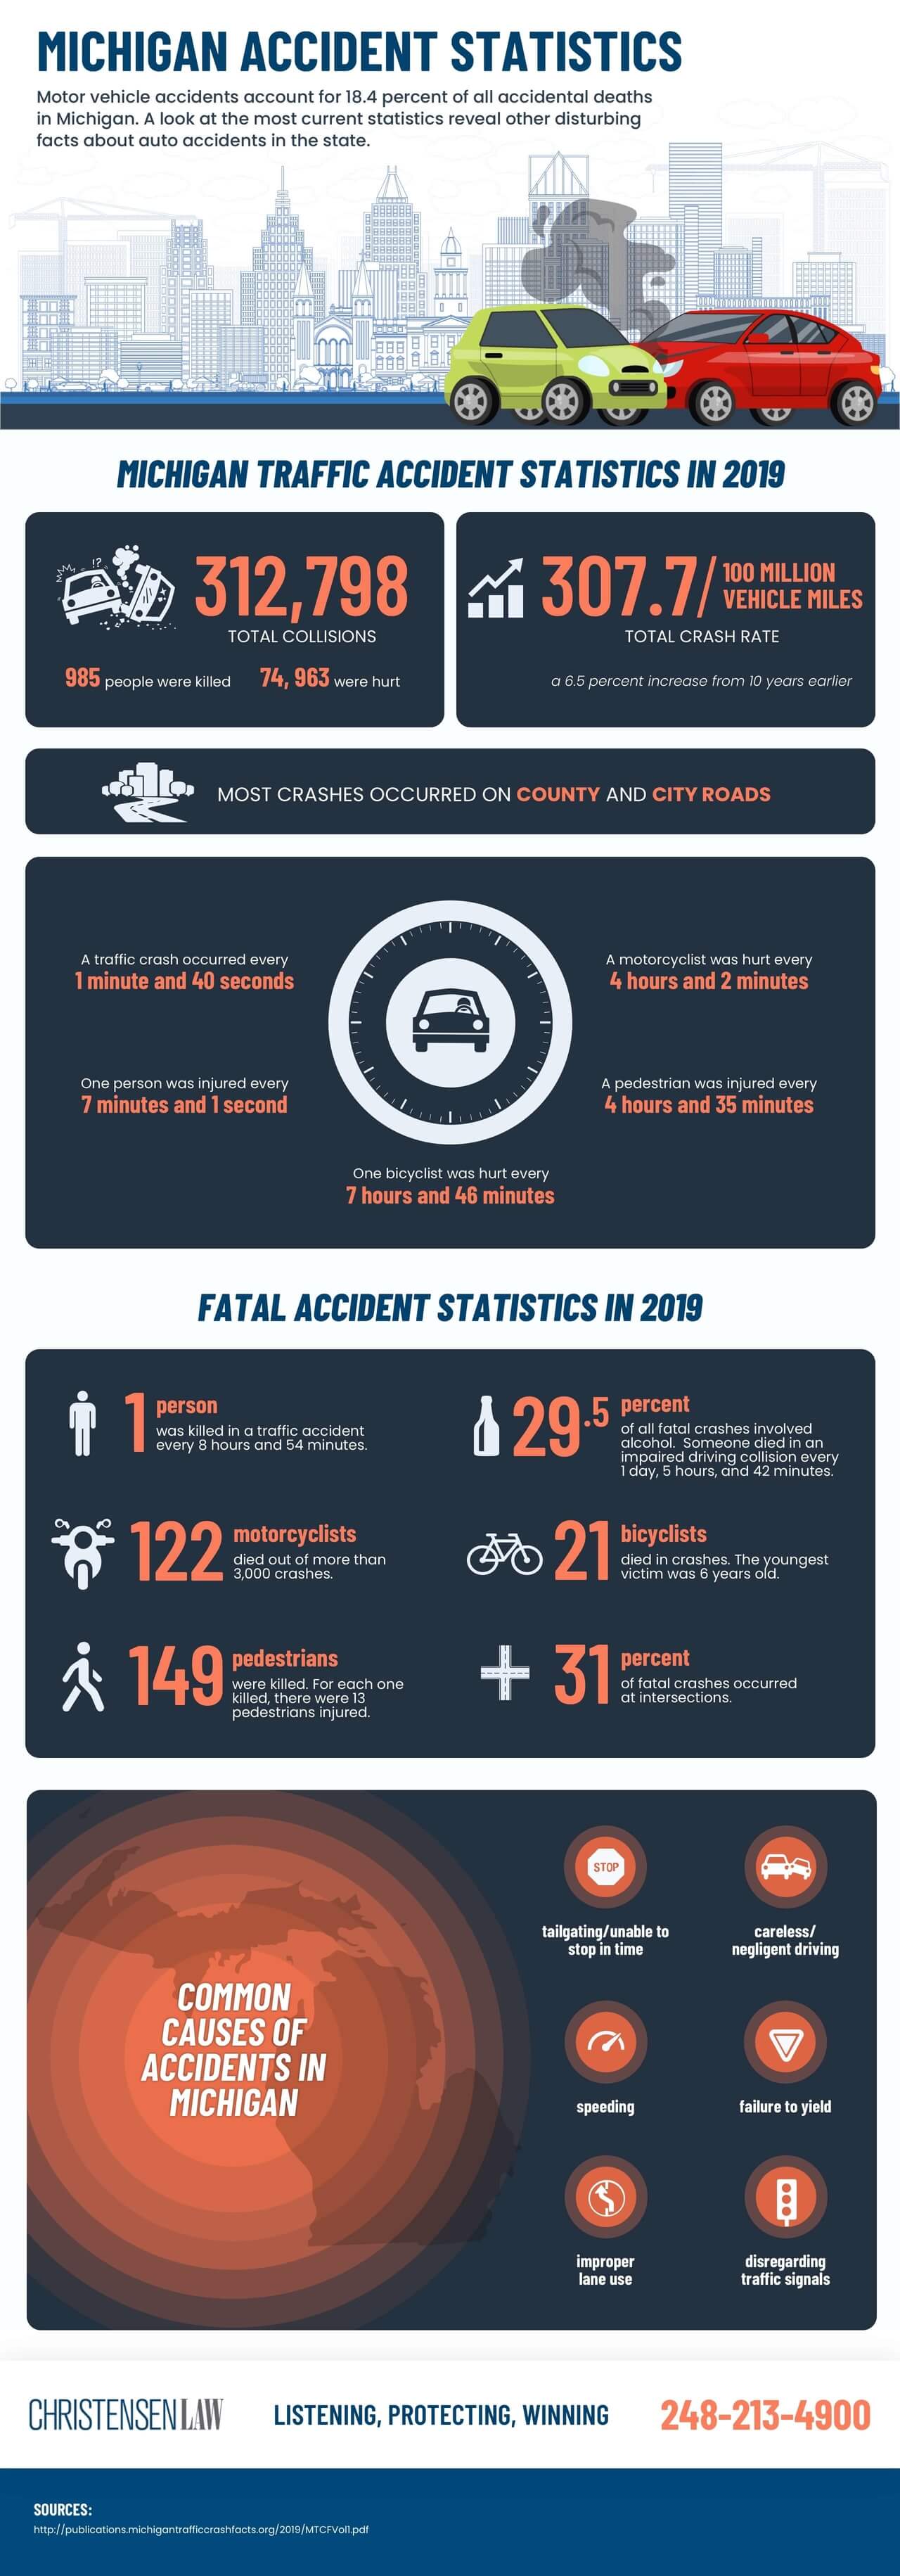 Michigan Accident Statistics - Christensen Law